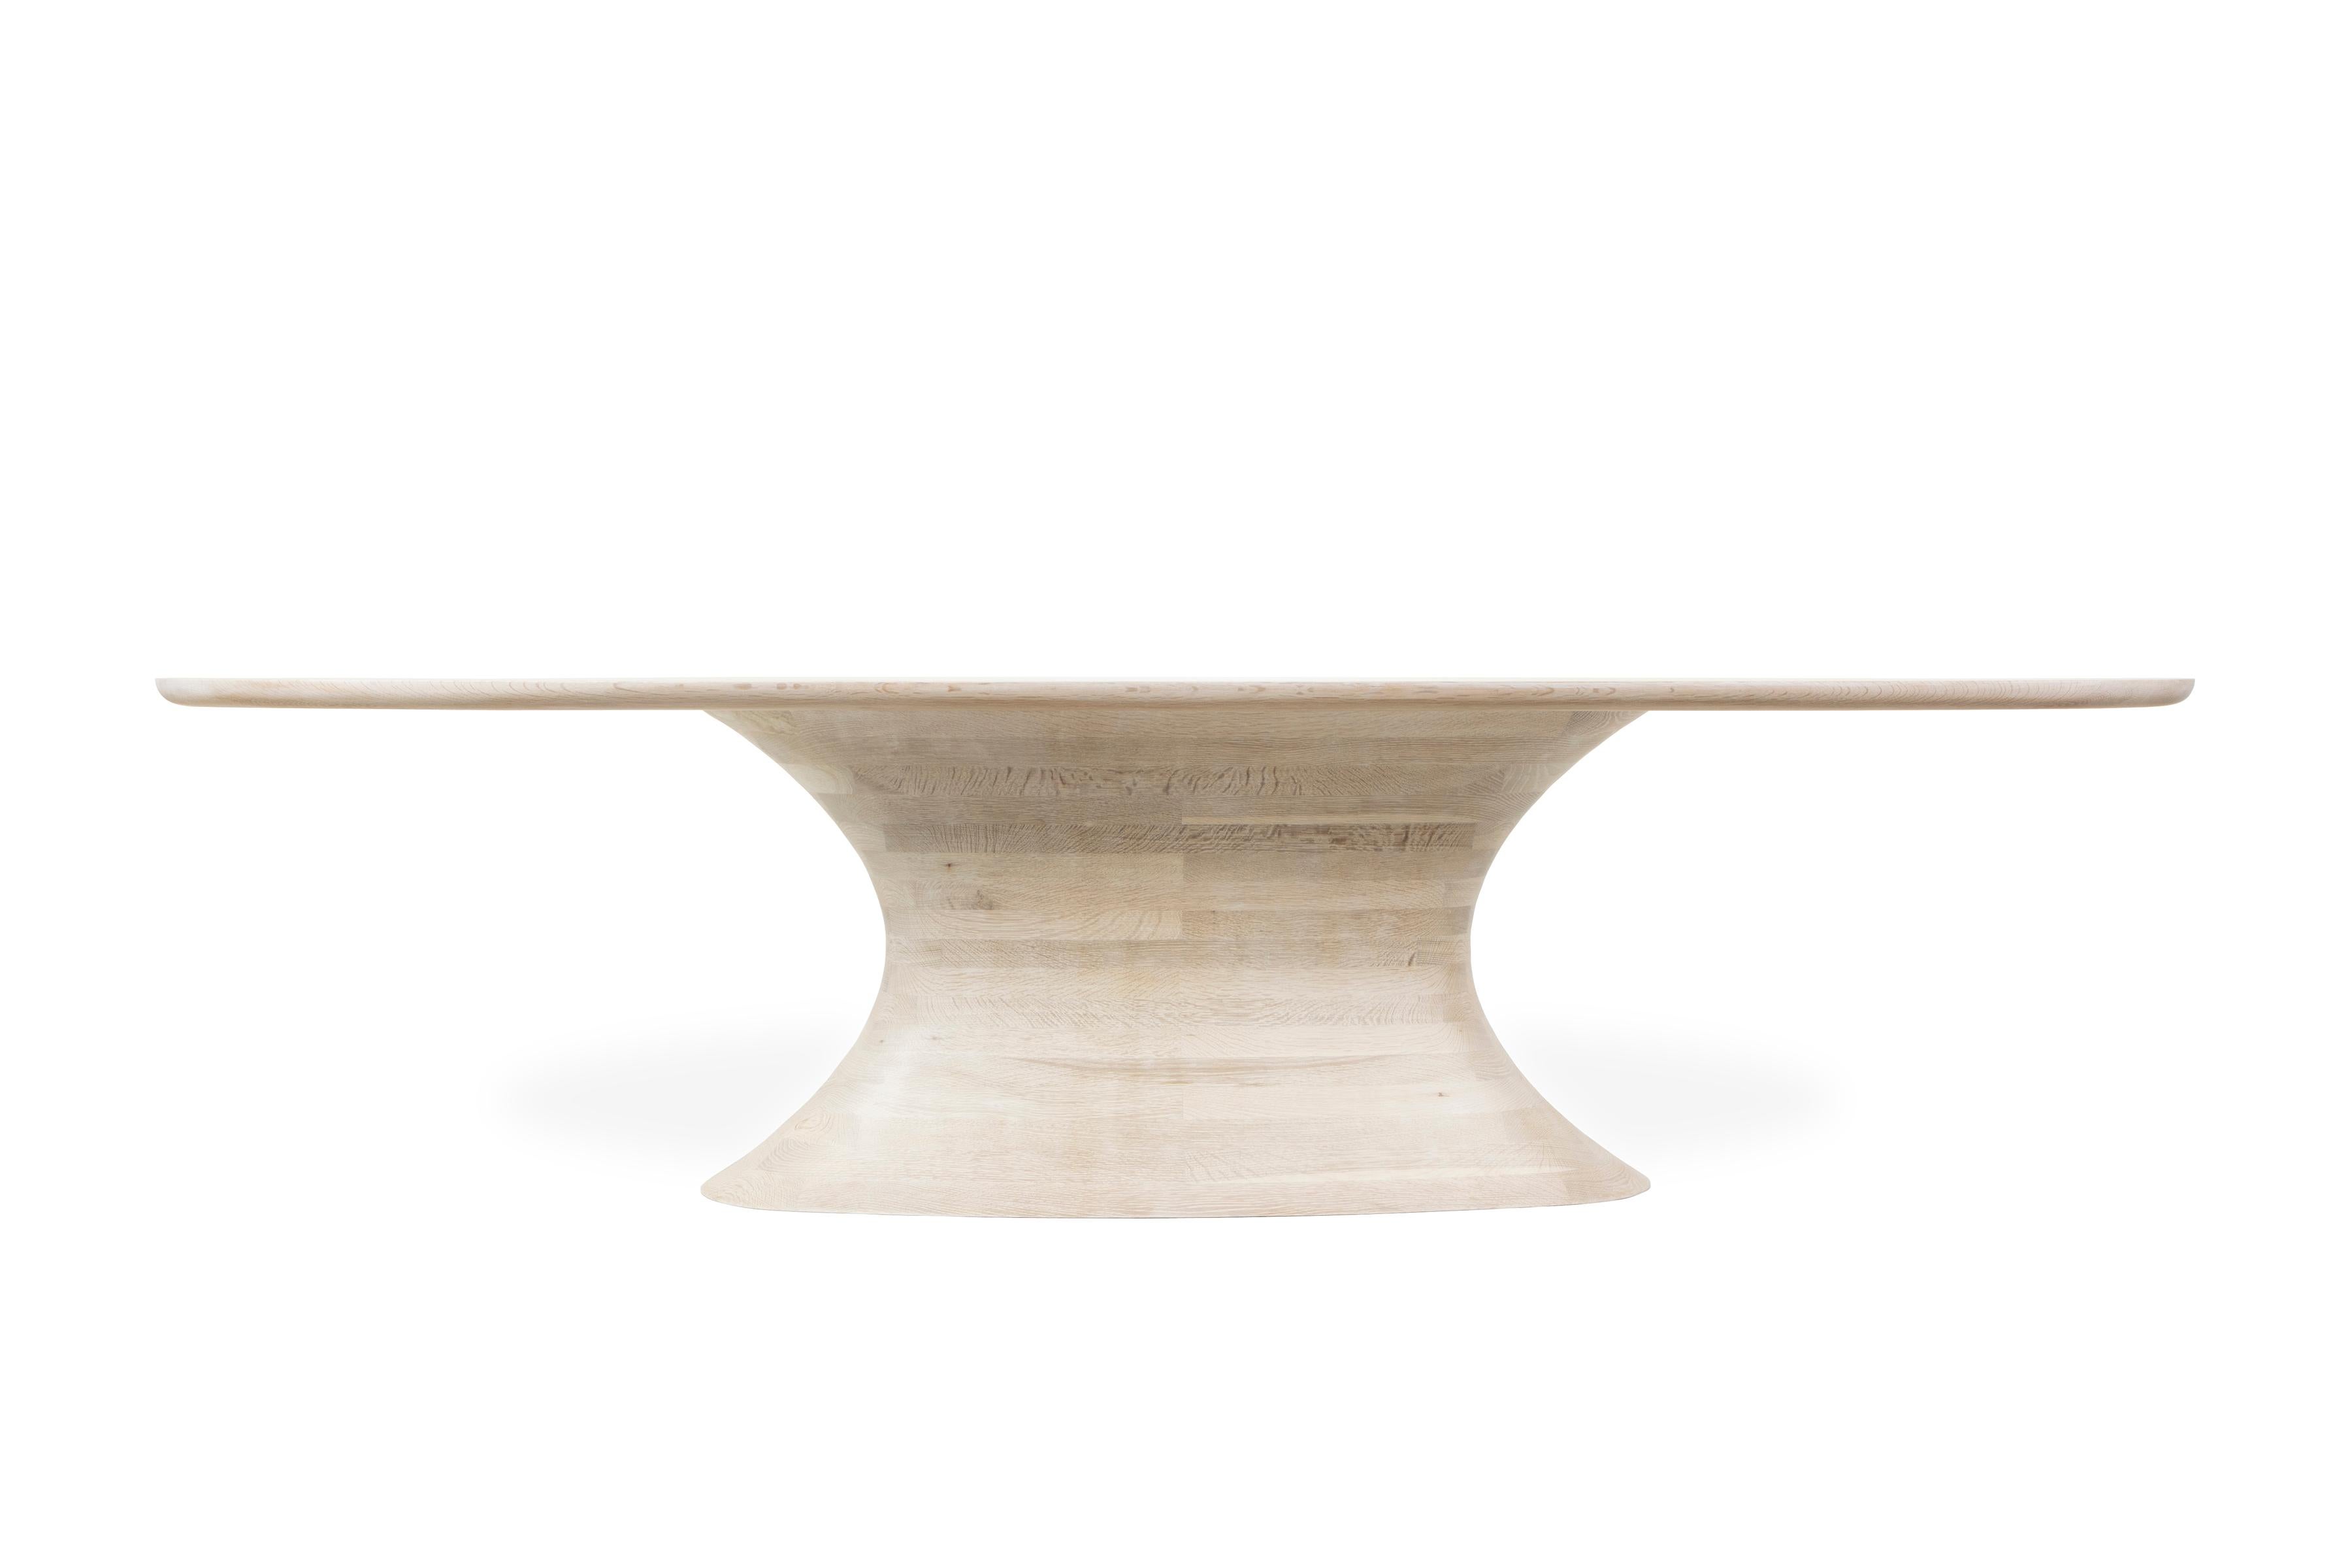 CONCAVE est une table de salle à manger de prestige en chêne massif, magnifiquement blanchi pour accentuer le grain naturel du bois.

Cette table à manger contemporaine est adoucie par son inspiration organique. Fabriqué dans le meilleur chêne